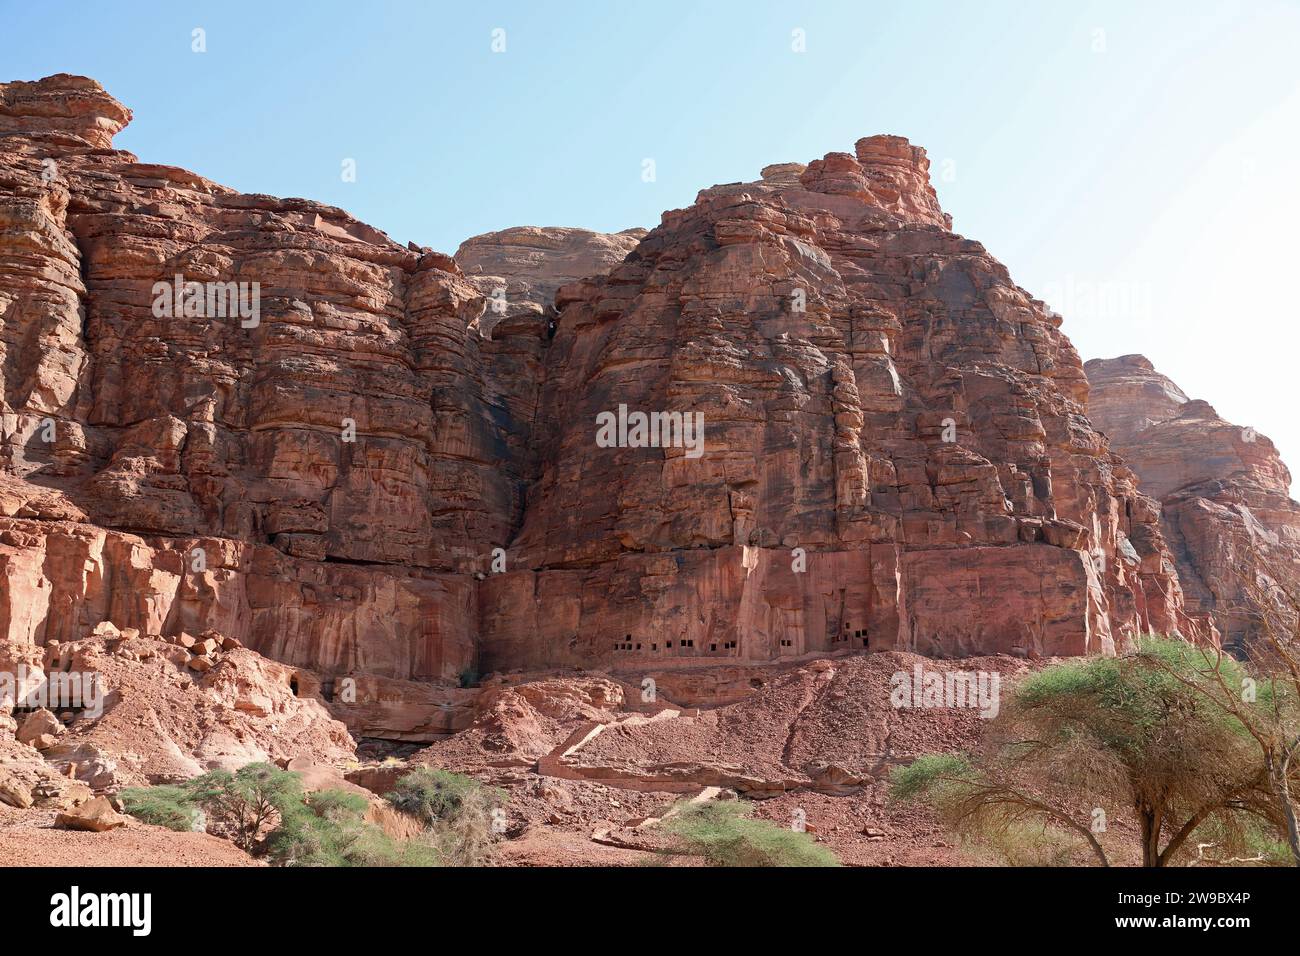 Tombe dei leoni scolpite nelle scogliere di roccia rossa a Dadan in Alula Foto Stock